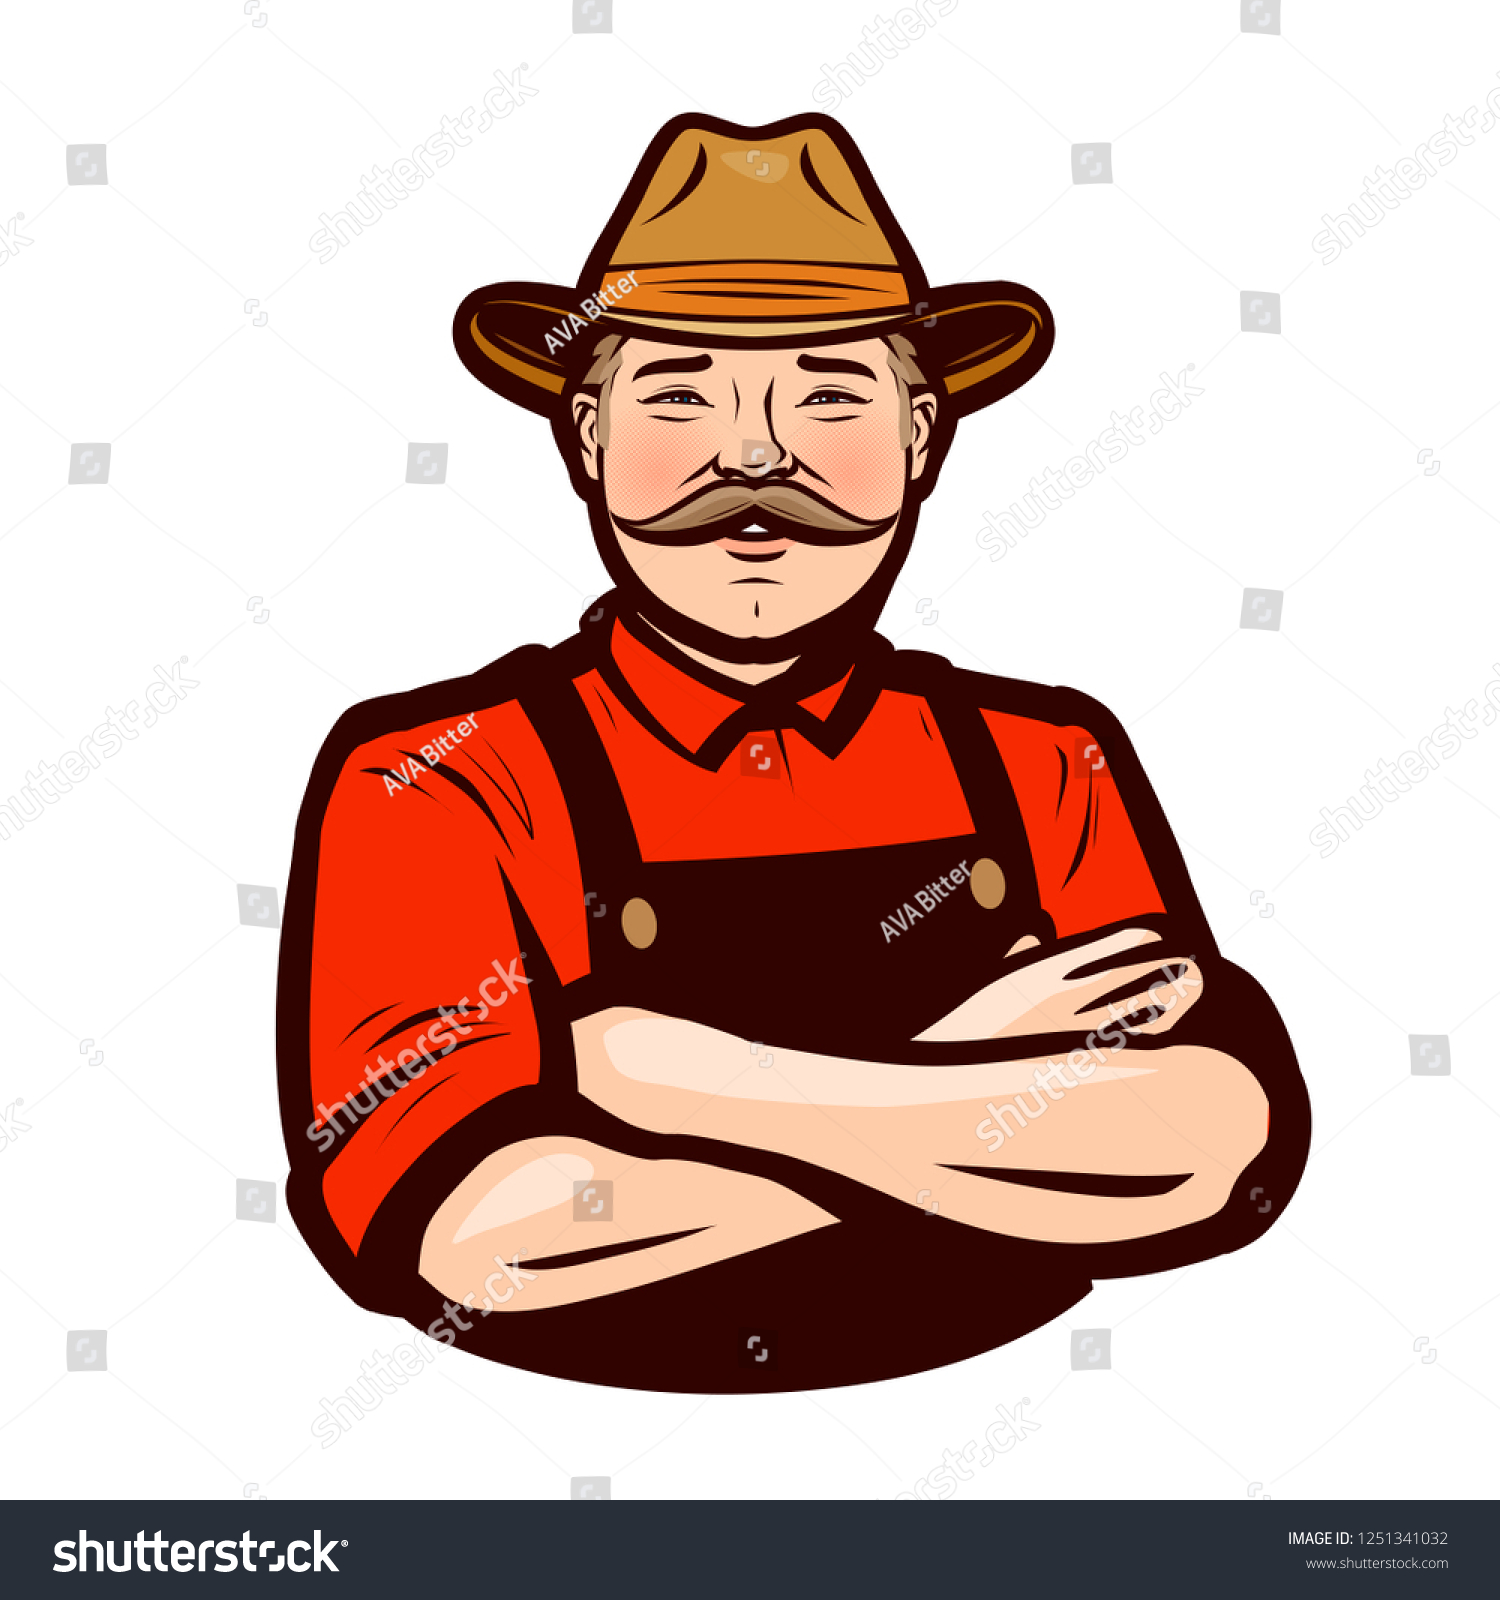 11,040 Moustache man logo Images, Stock Photos & Vectors | Shutterstock